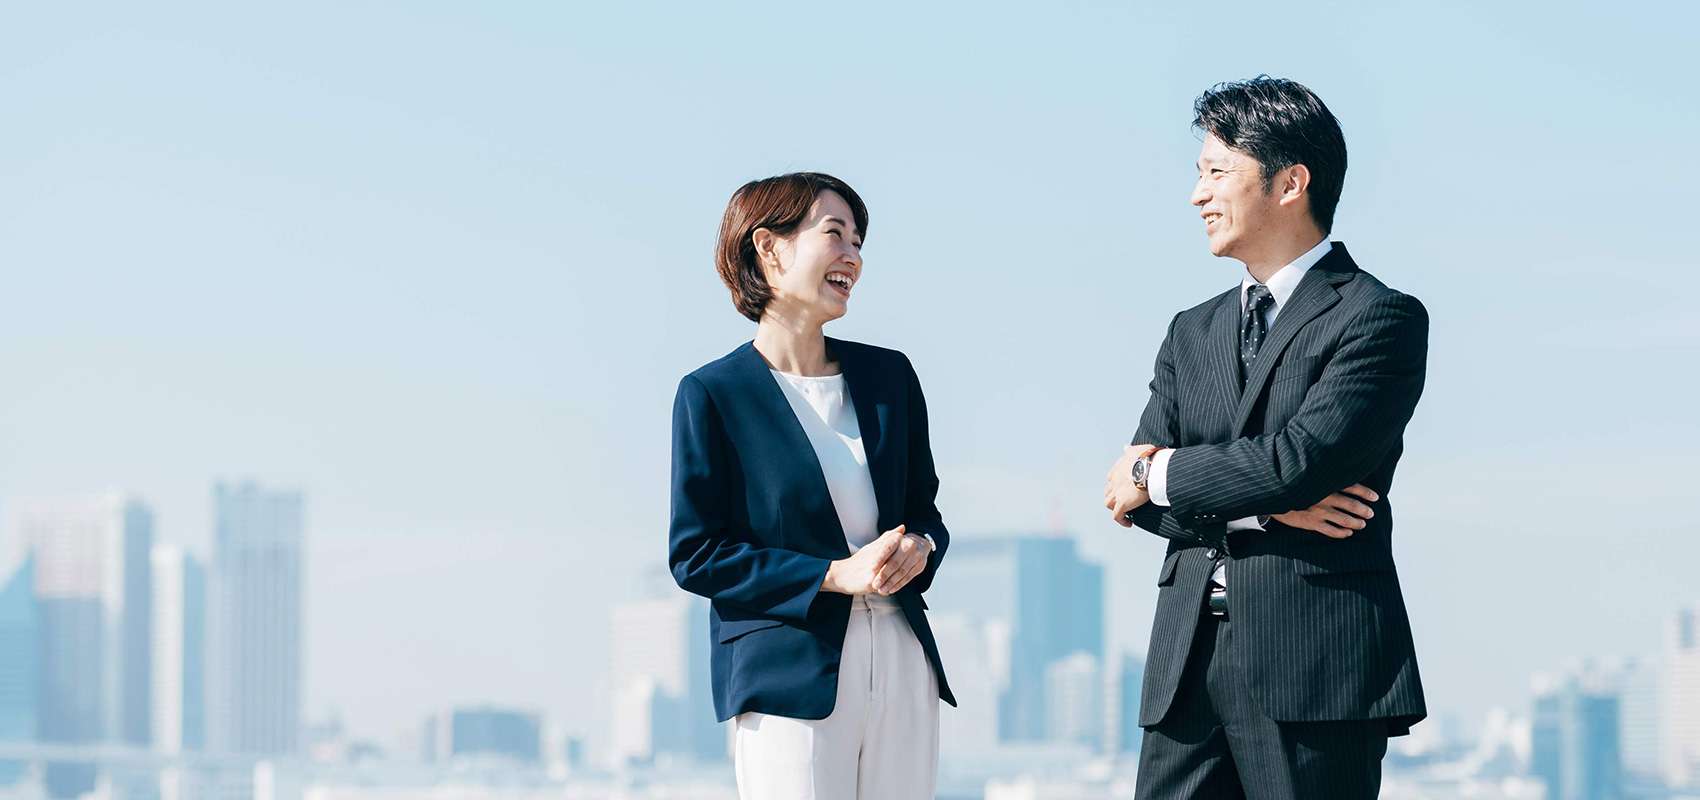 13【SDGs　GOAL 15】神奈川、横浜より未来をつくる経営者様へ発信